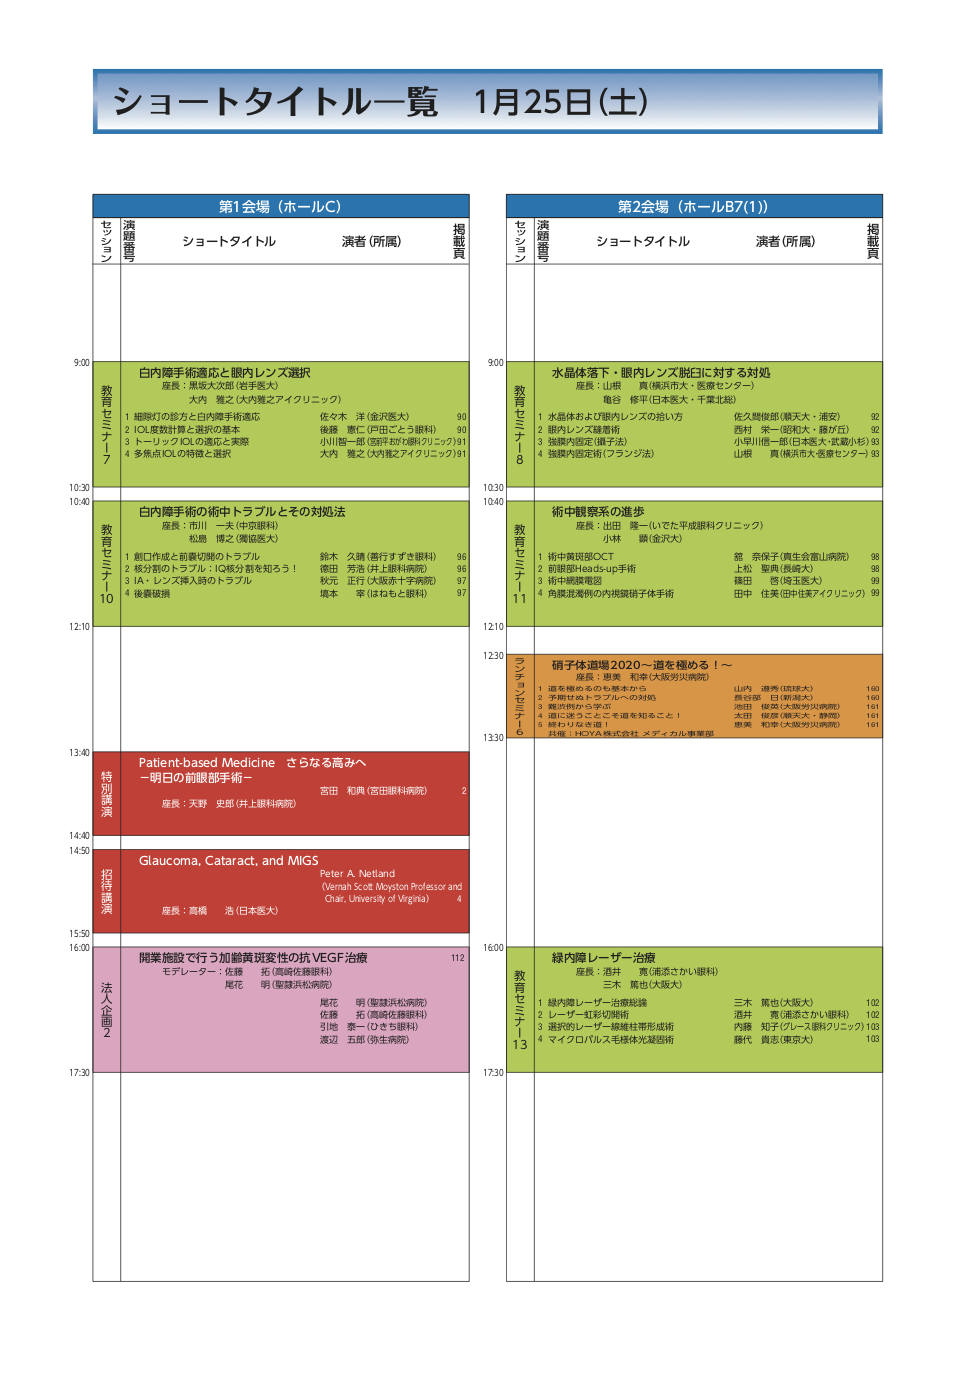 jsos43-schedule-j-2-2.png